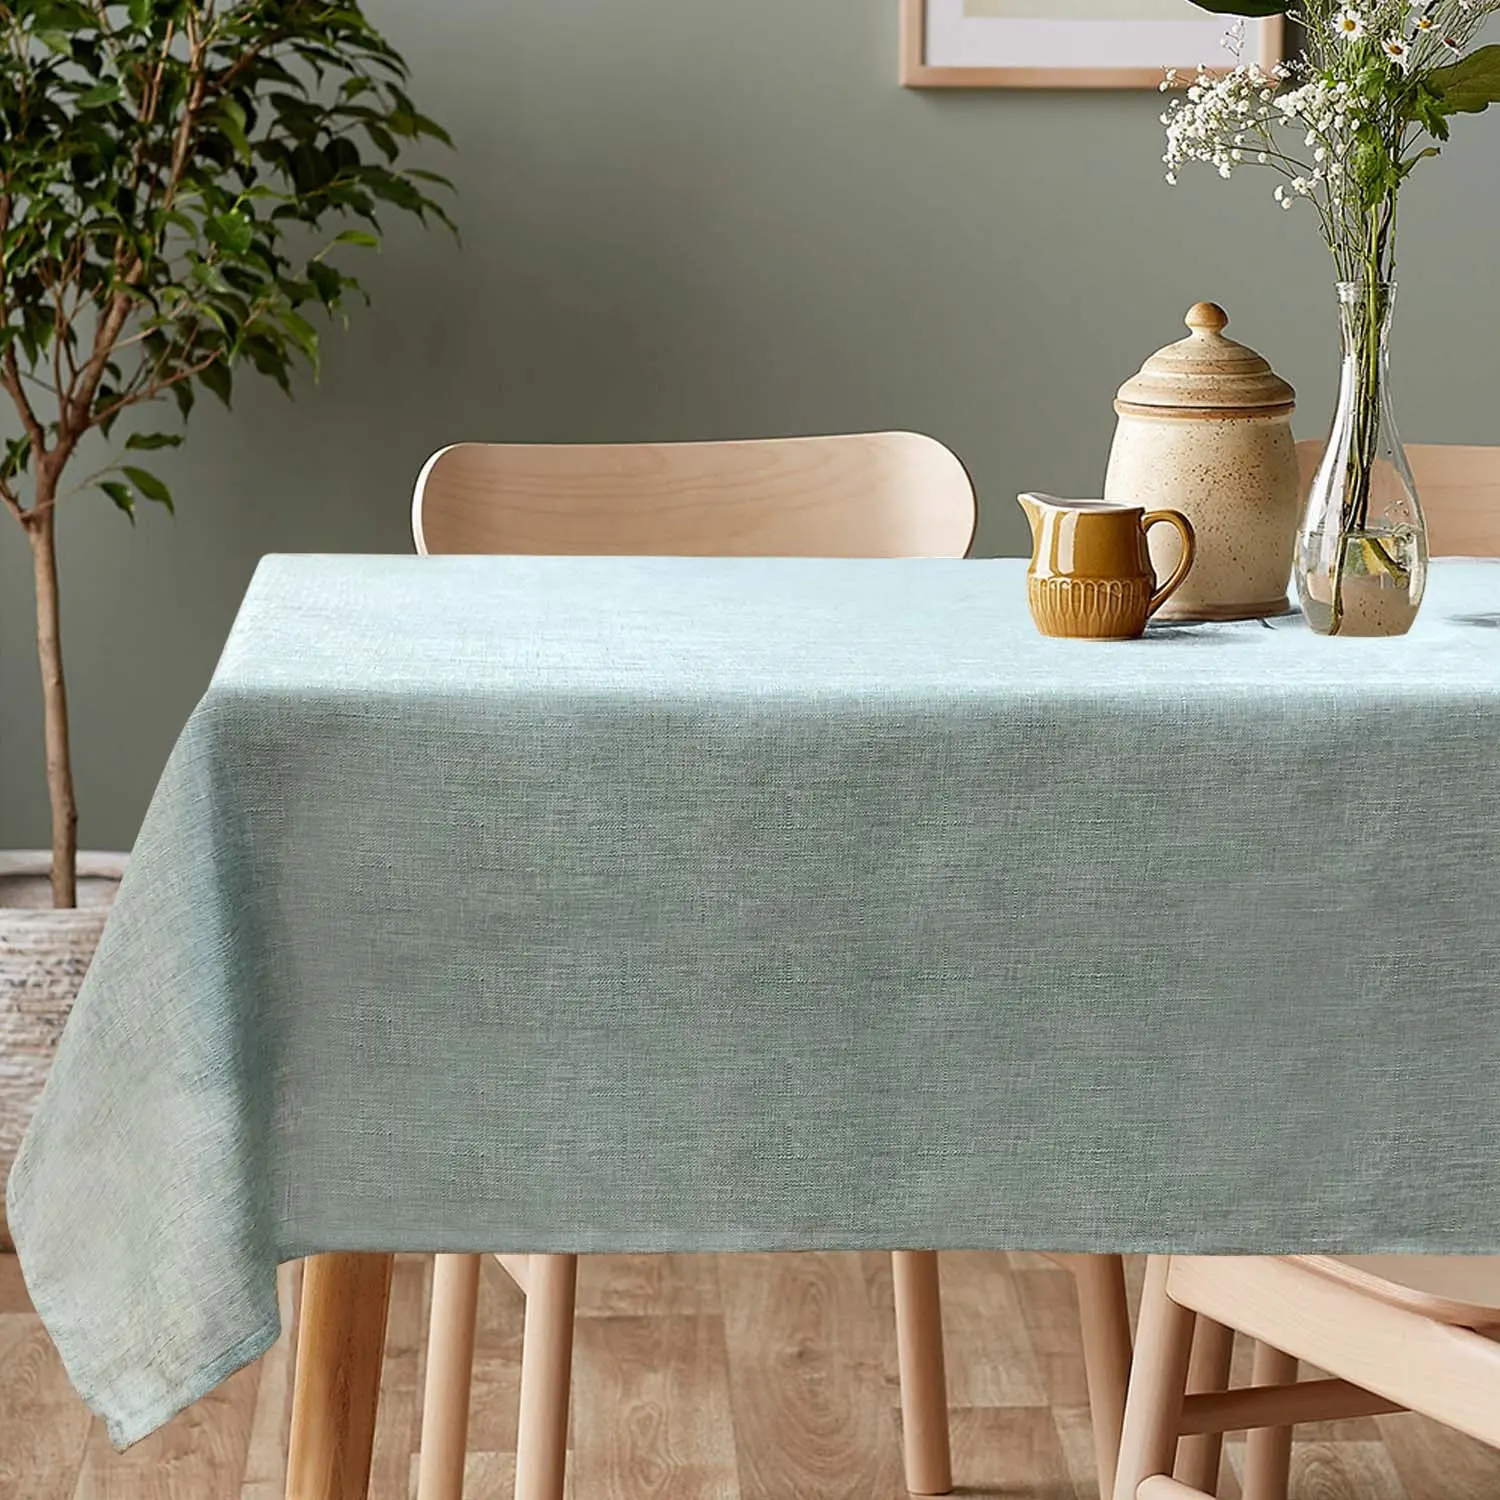 ODM Polyester keten masa örtüsü yıkanabilir masa örtüsü masa için özel çin dokuma çiçek baskılı fabrika renkli kapalı